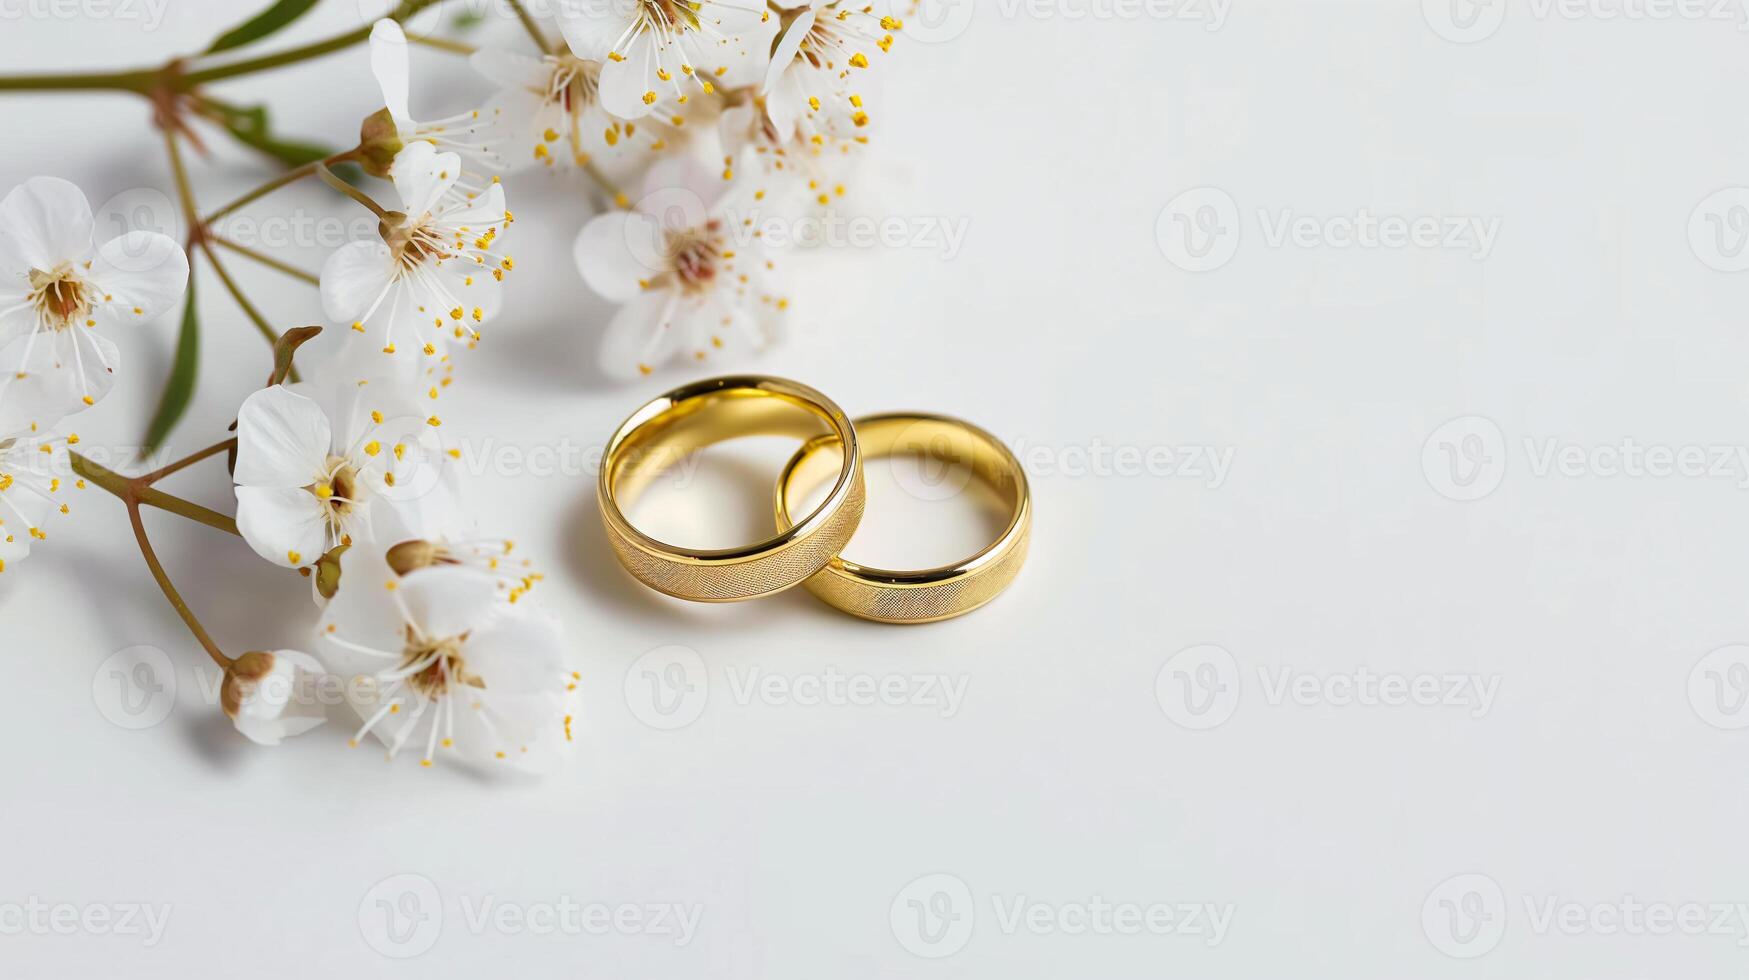 elegant goud bruiloft ringen temidden van kers bloesems Aan een wit backdrop foto